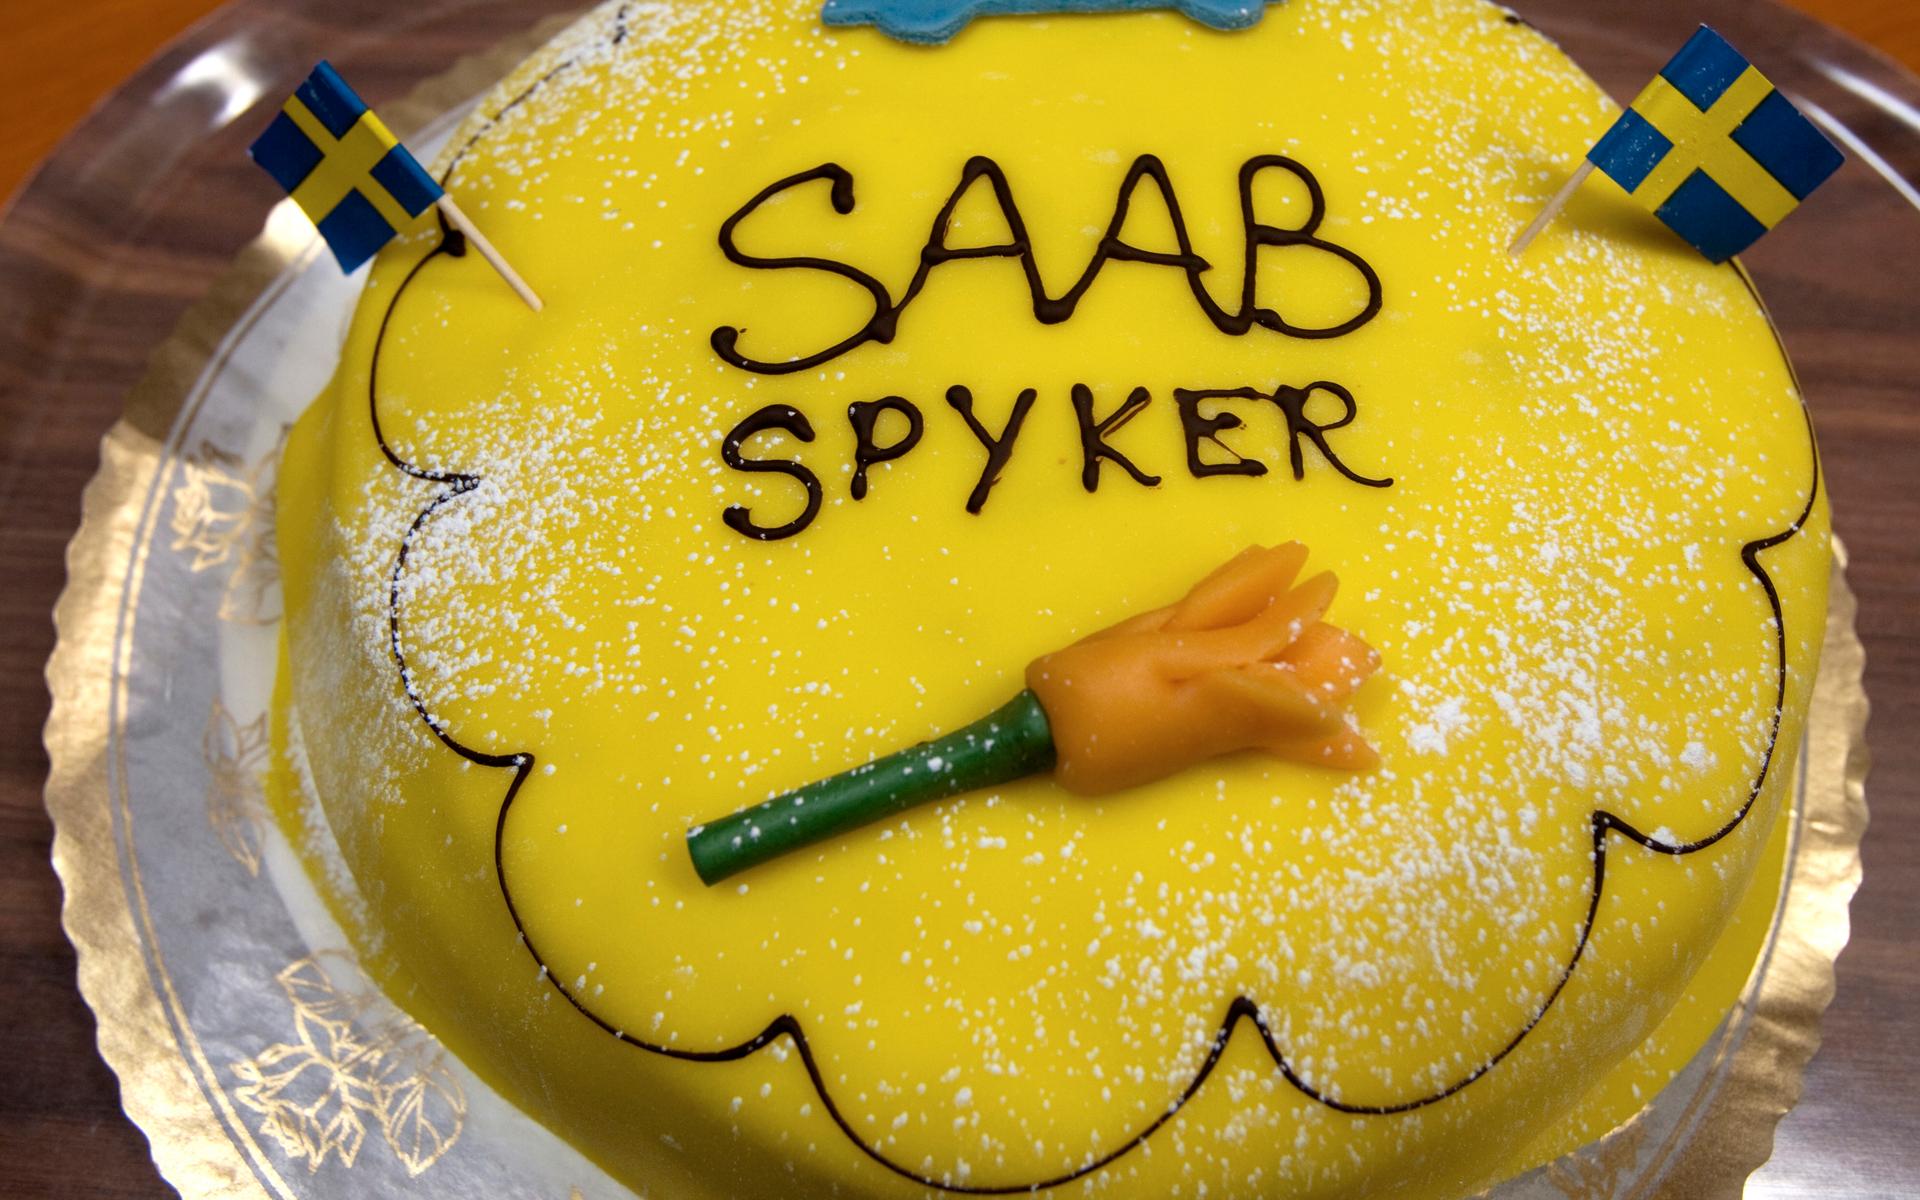 Gert-Inge Andersson kommunalråd (s), firar med  Saab-tårta  uinder KS-möte dagen efter besked om Saab-Spyker affären